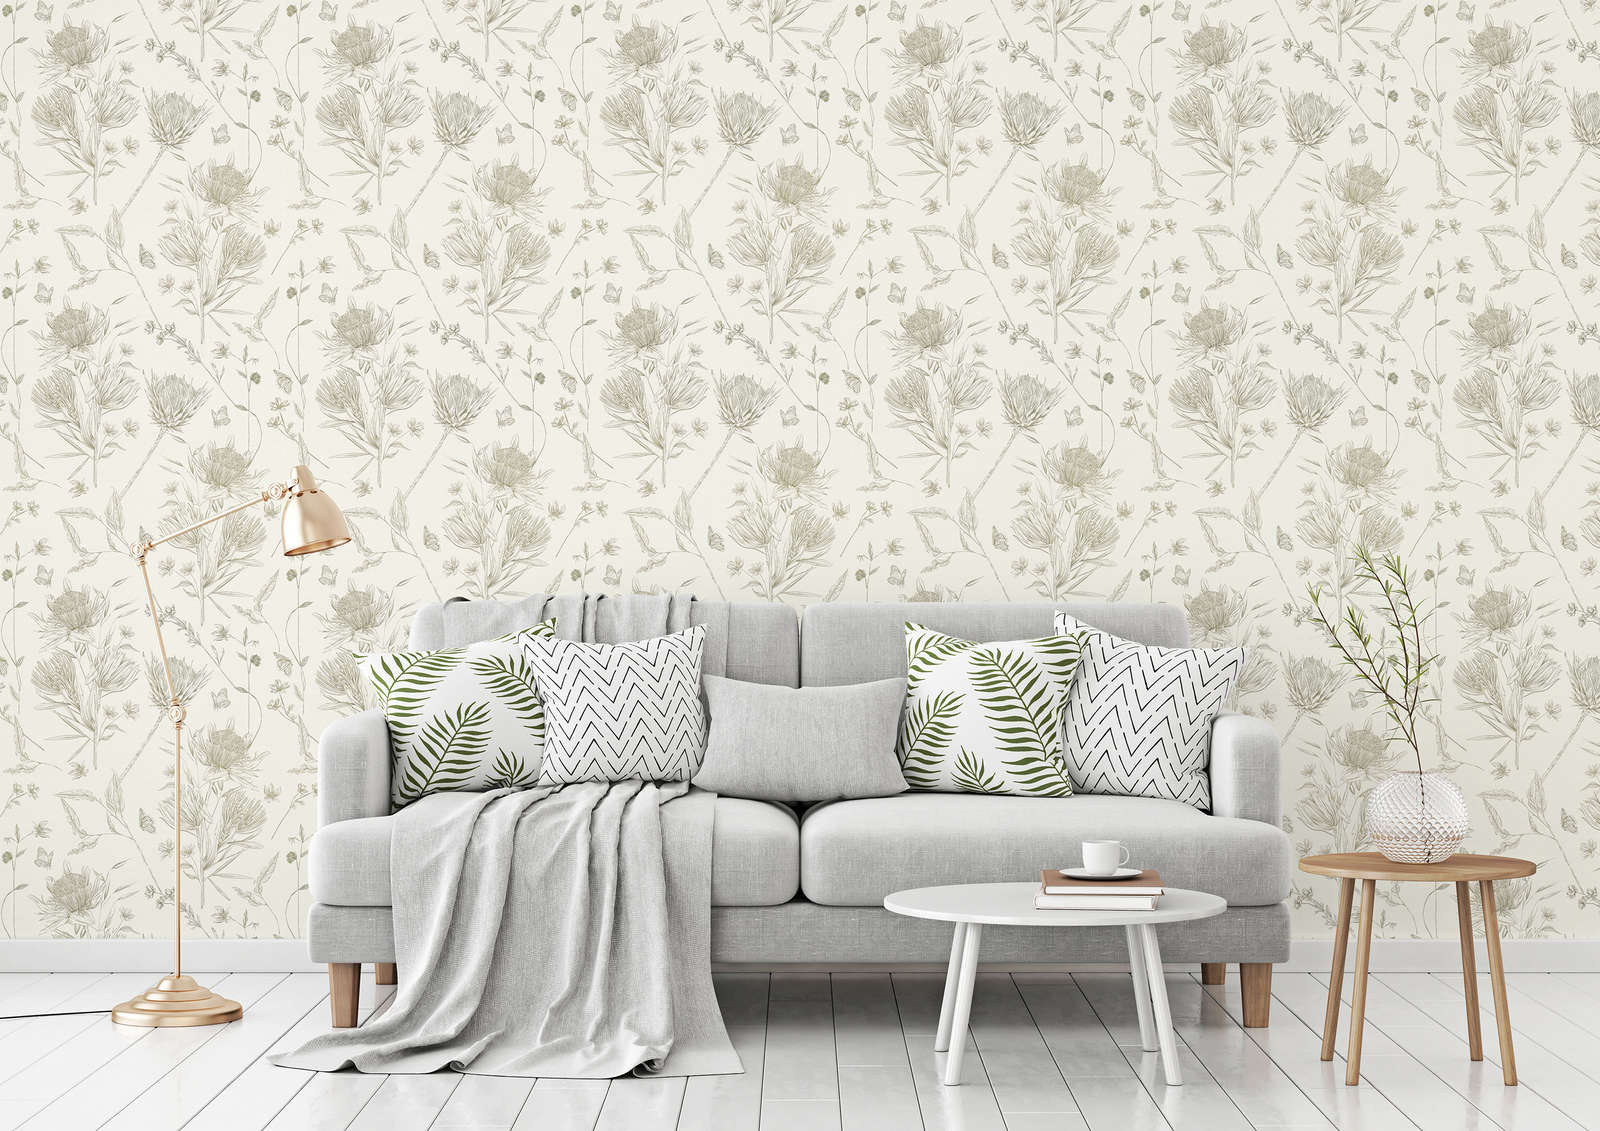             wallpaper floral with flowers & butterflies textured matt - white, green
        